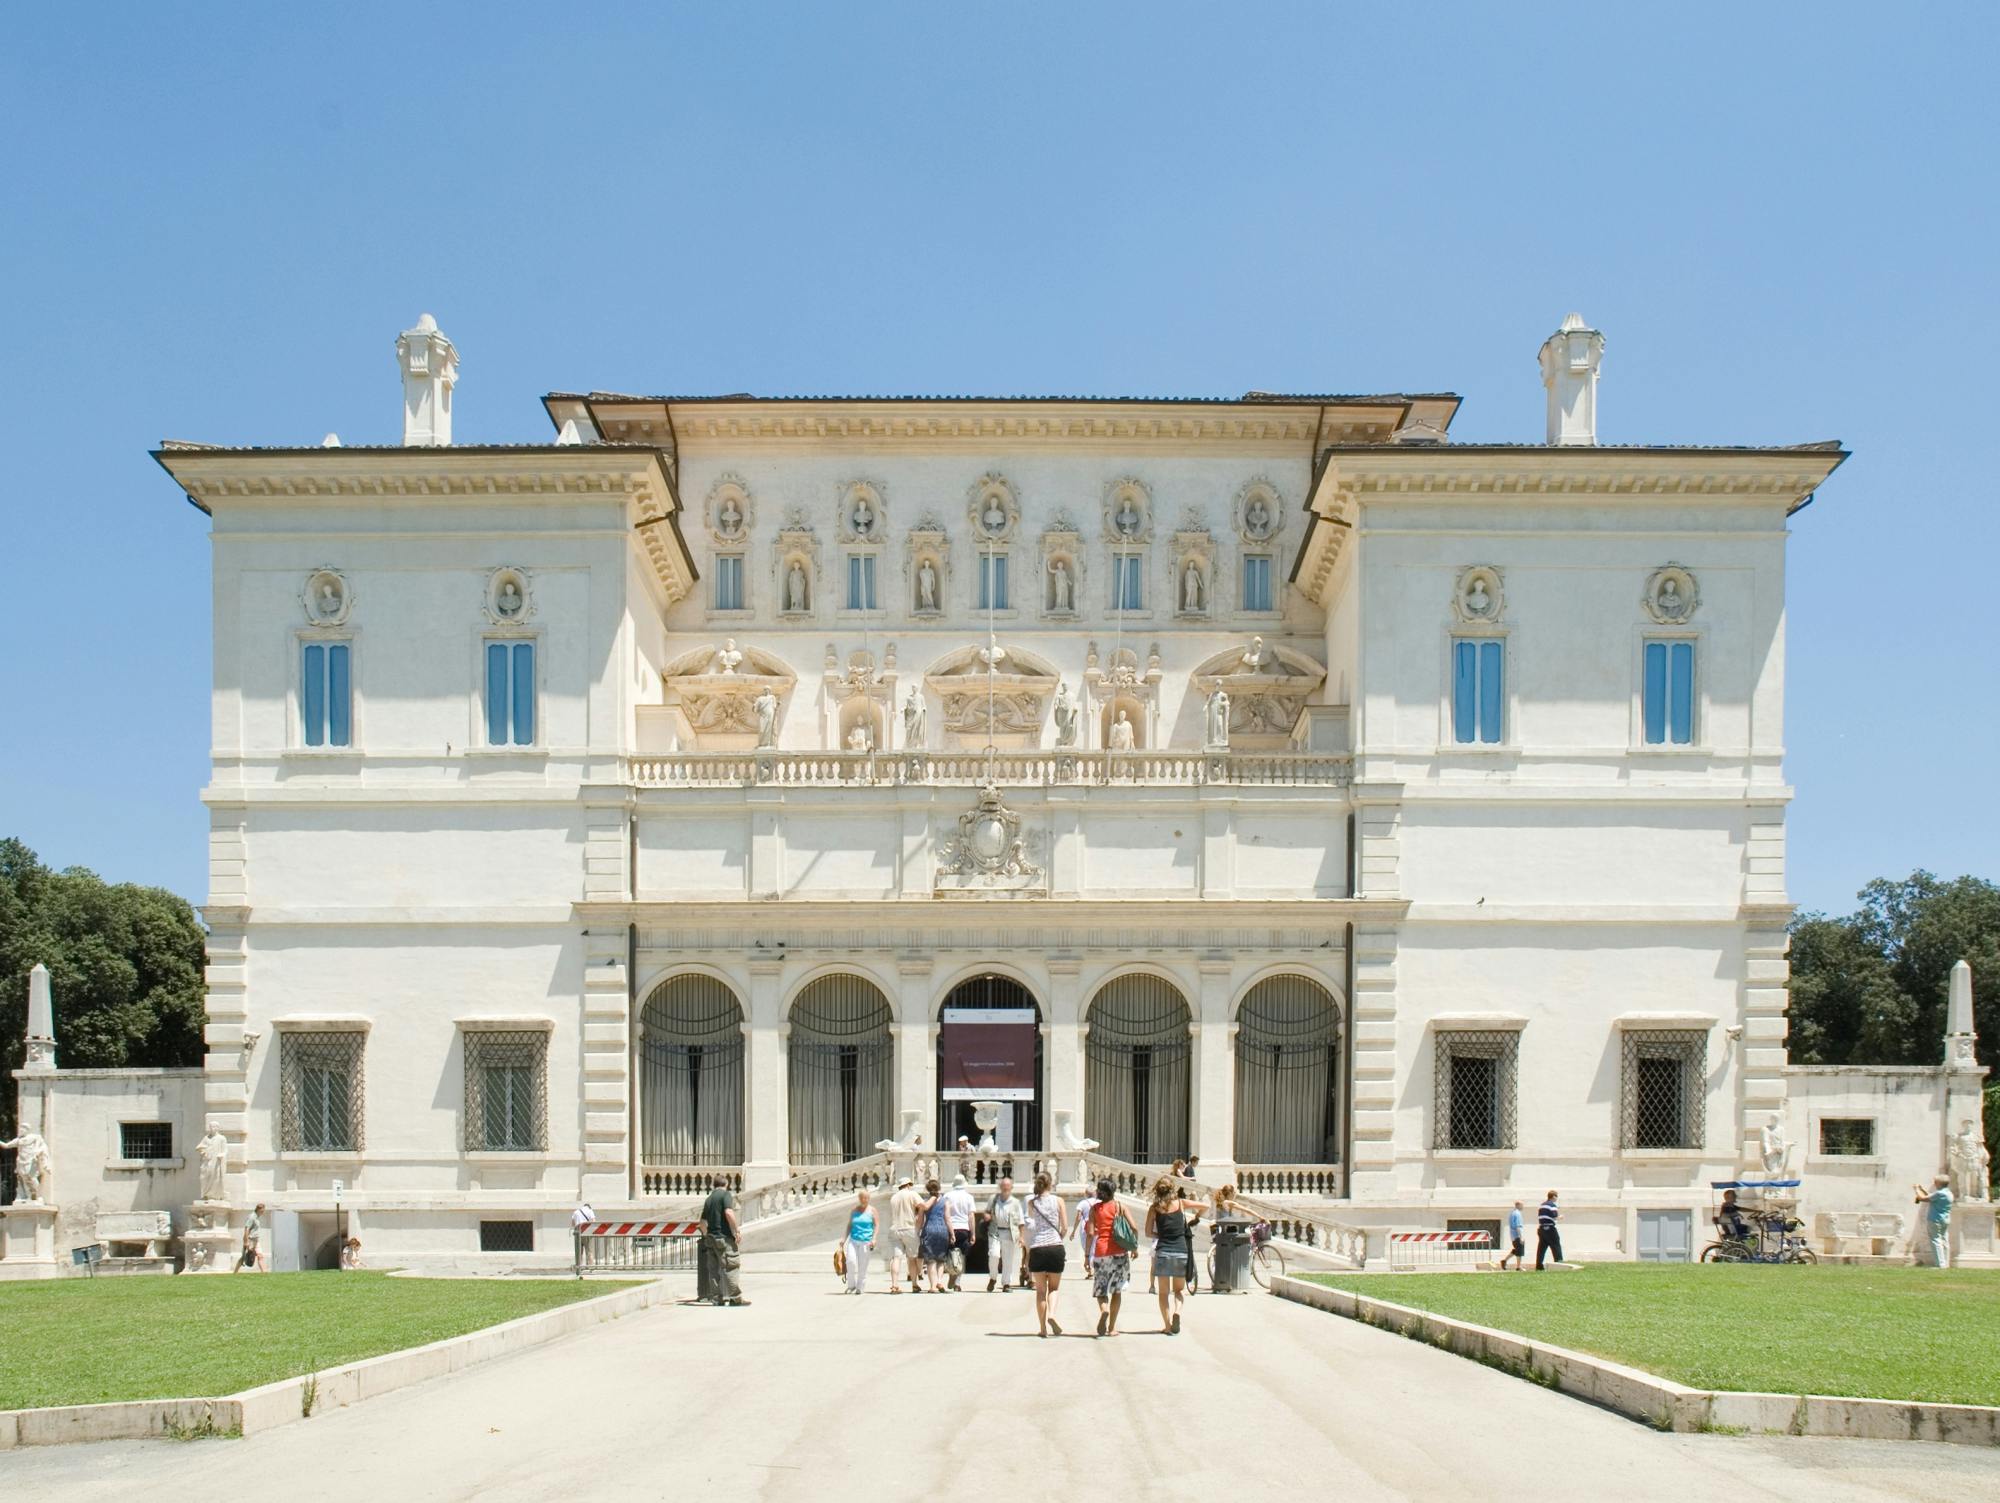 Visita guidata alla Galleria Borghese con ingresso salta fila